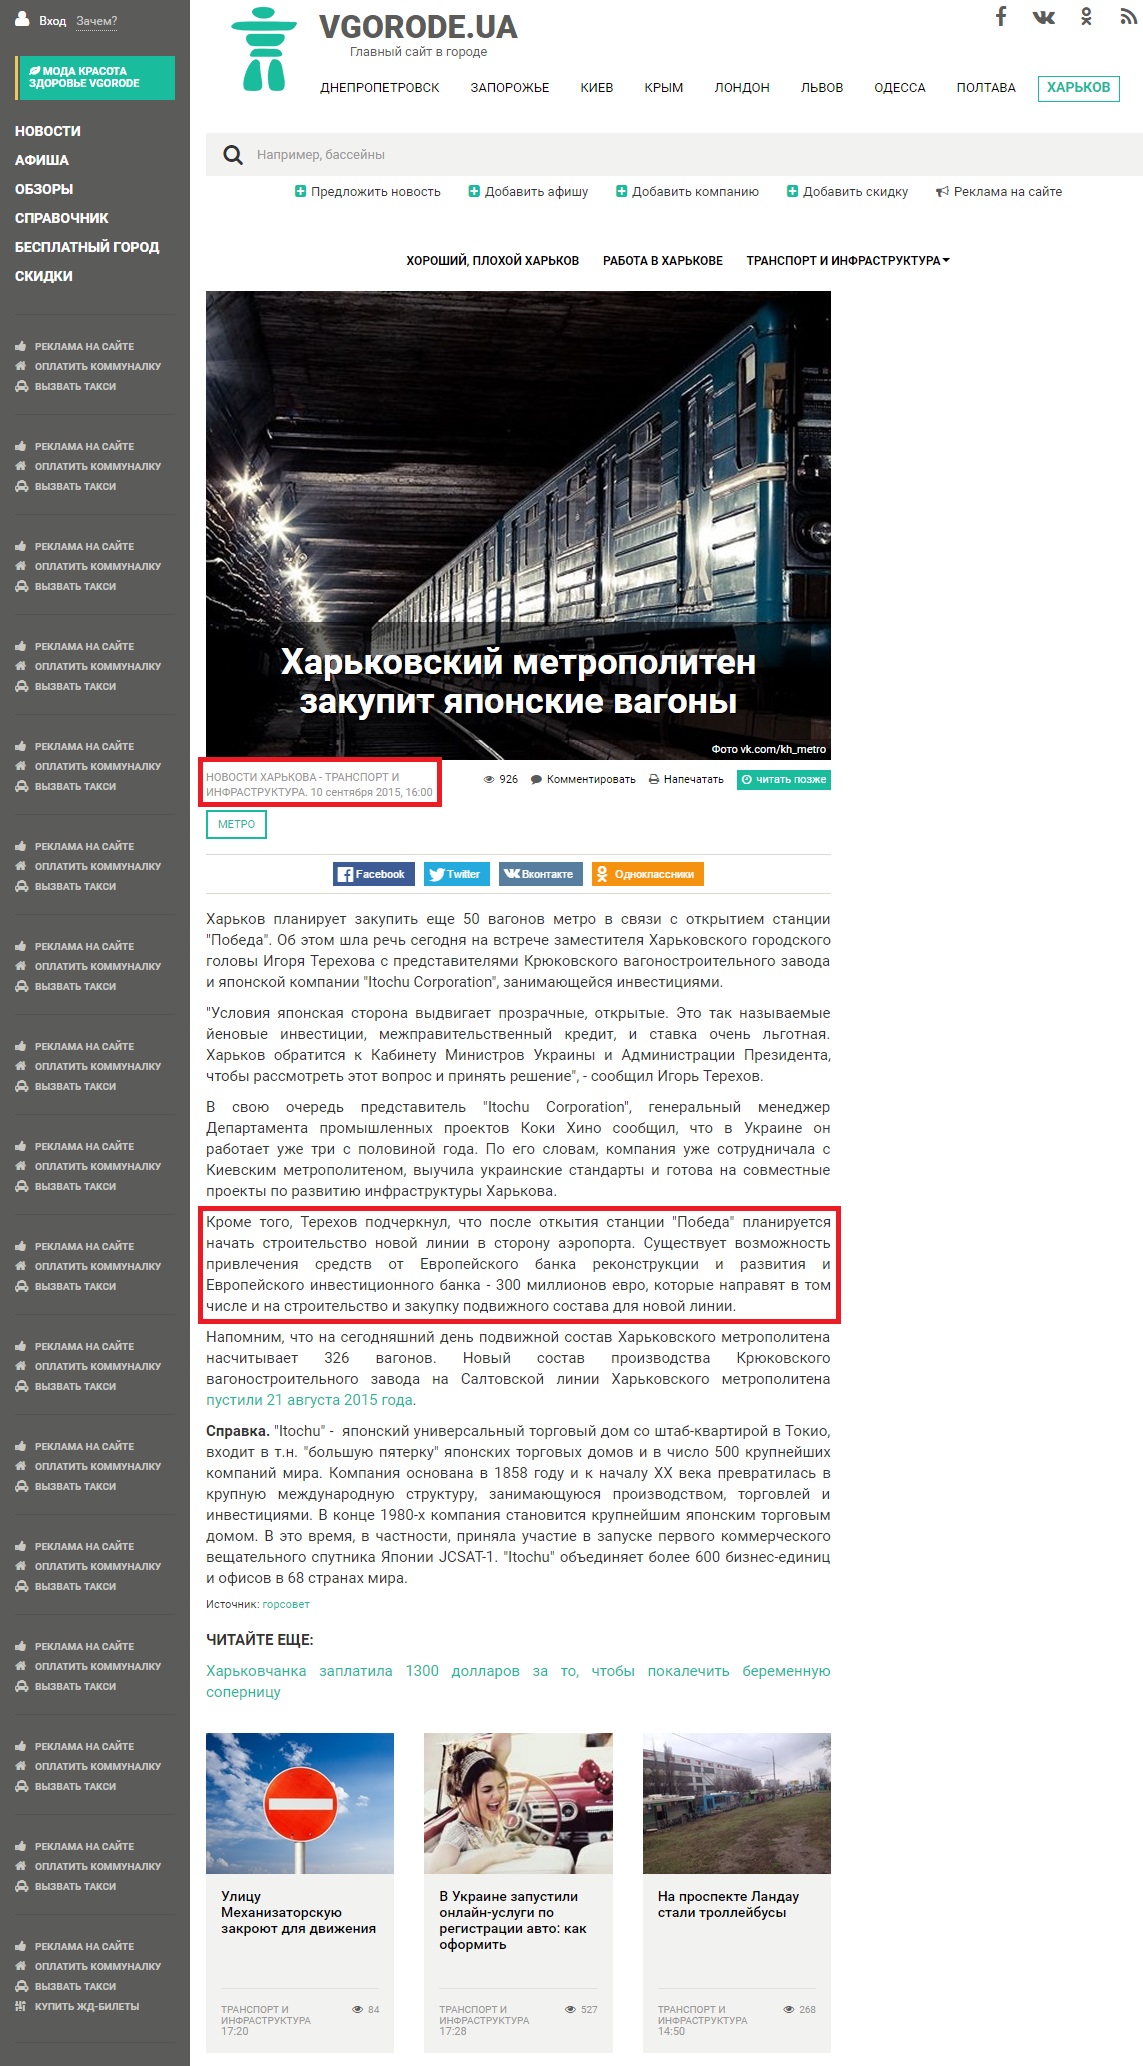 http://kh.vgorode.ua/news/transport_y_ynfrastruktura/268993-v-kharkovskom-metro-poiaviatsia-yaponskye-vahony